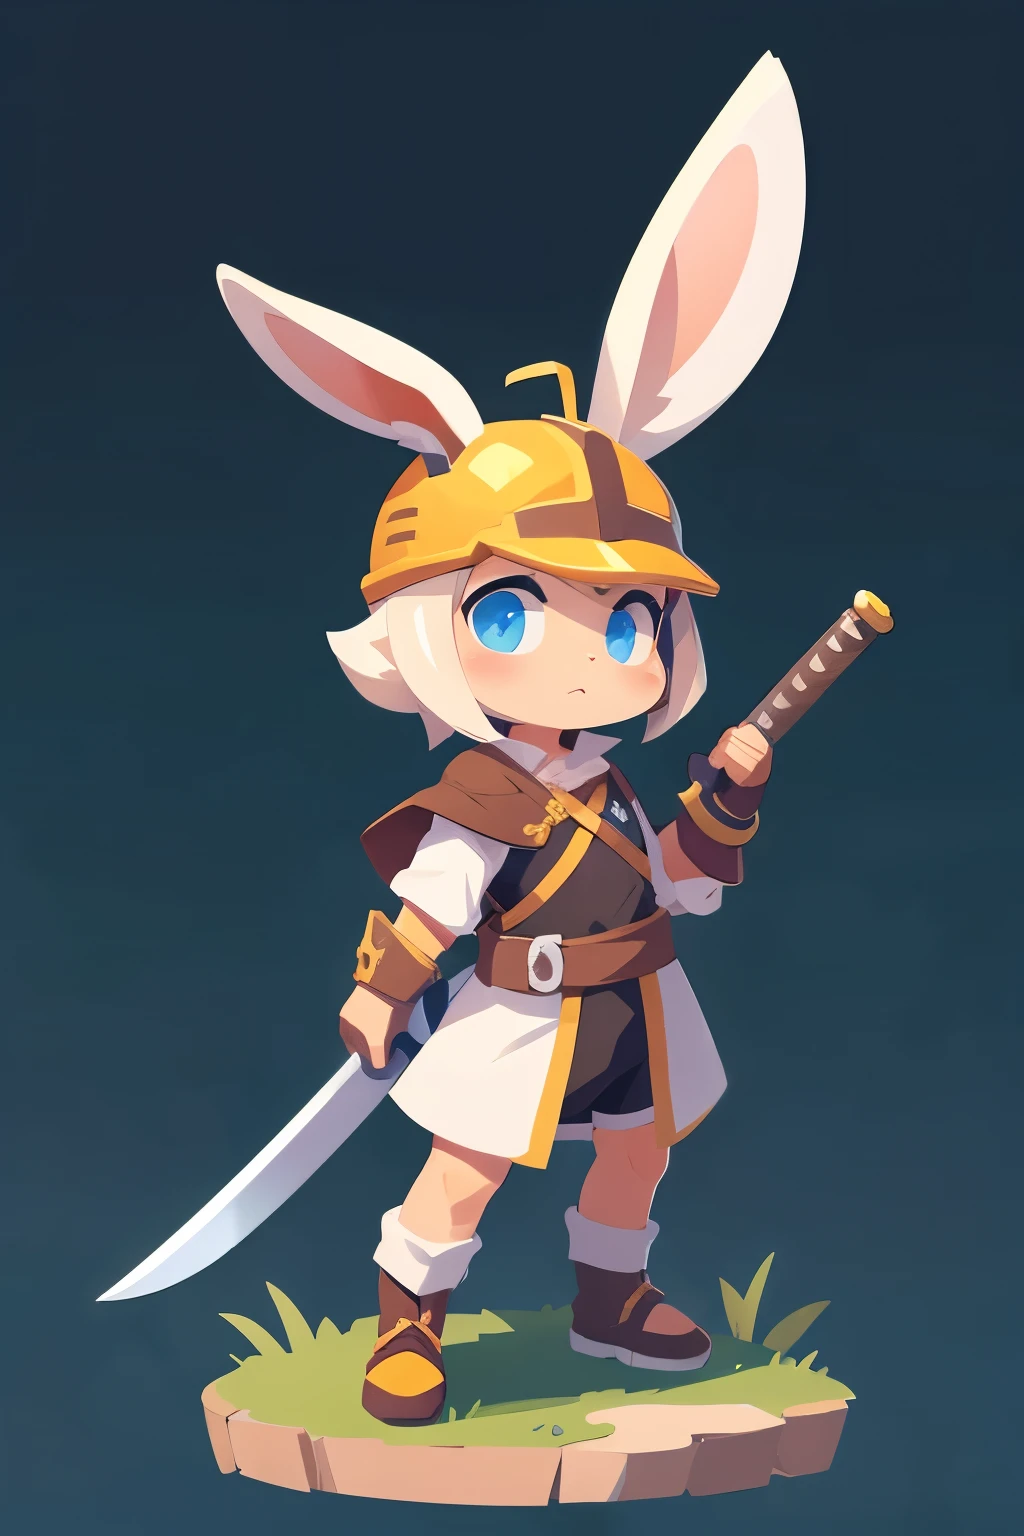 Crea un conejo espadachín en miniatura con casco